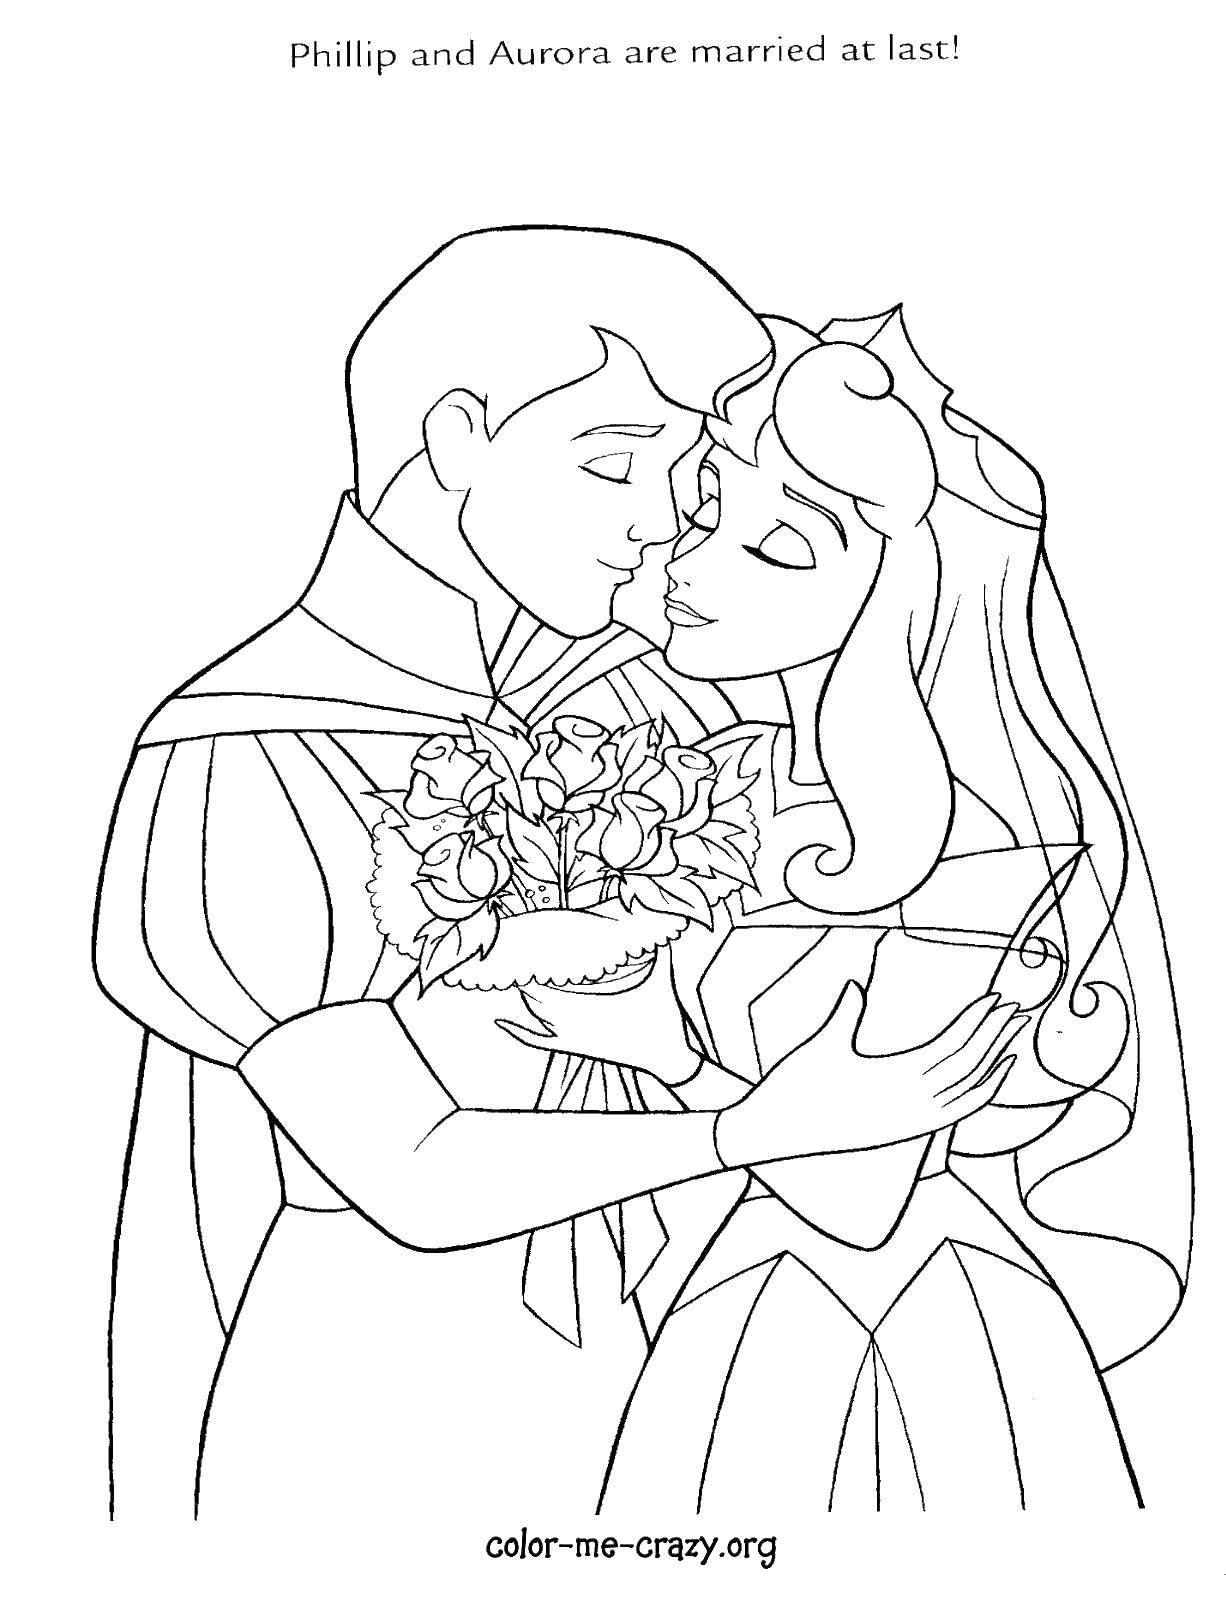 Раскраска на тему свадьбы для девочек: принц, принцесса и Аврора (принцесса, Аврора, девочки, изображения)